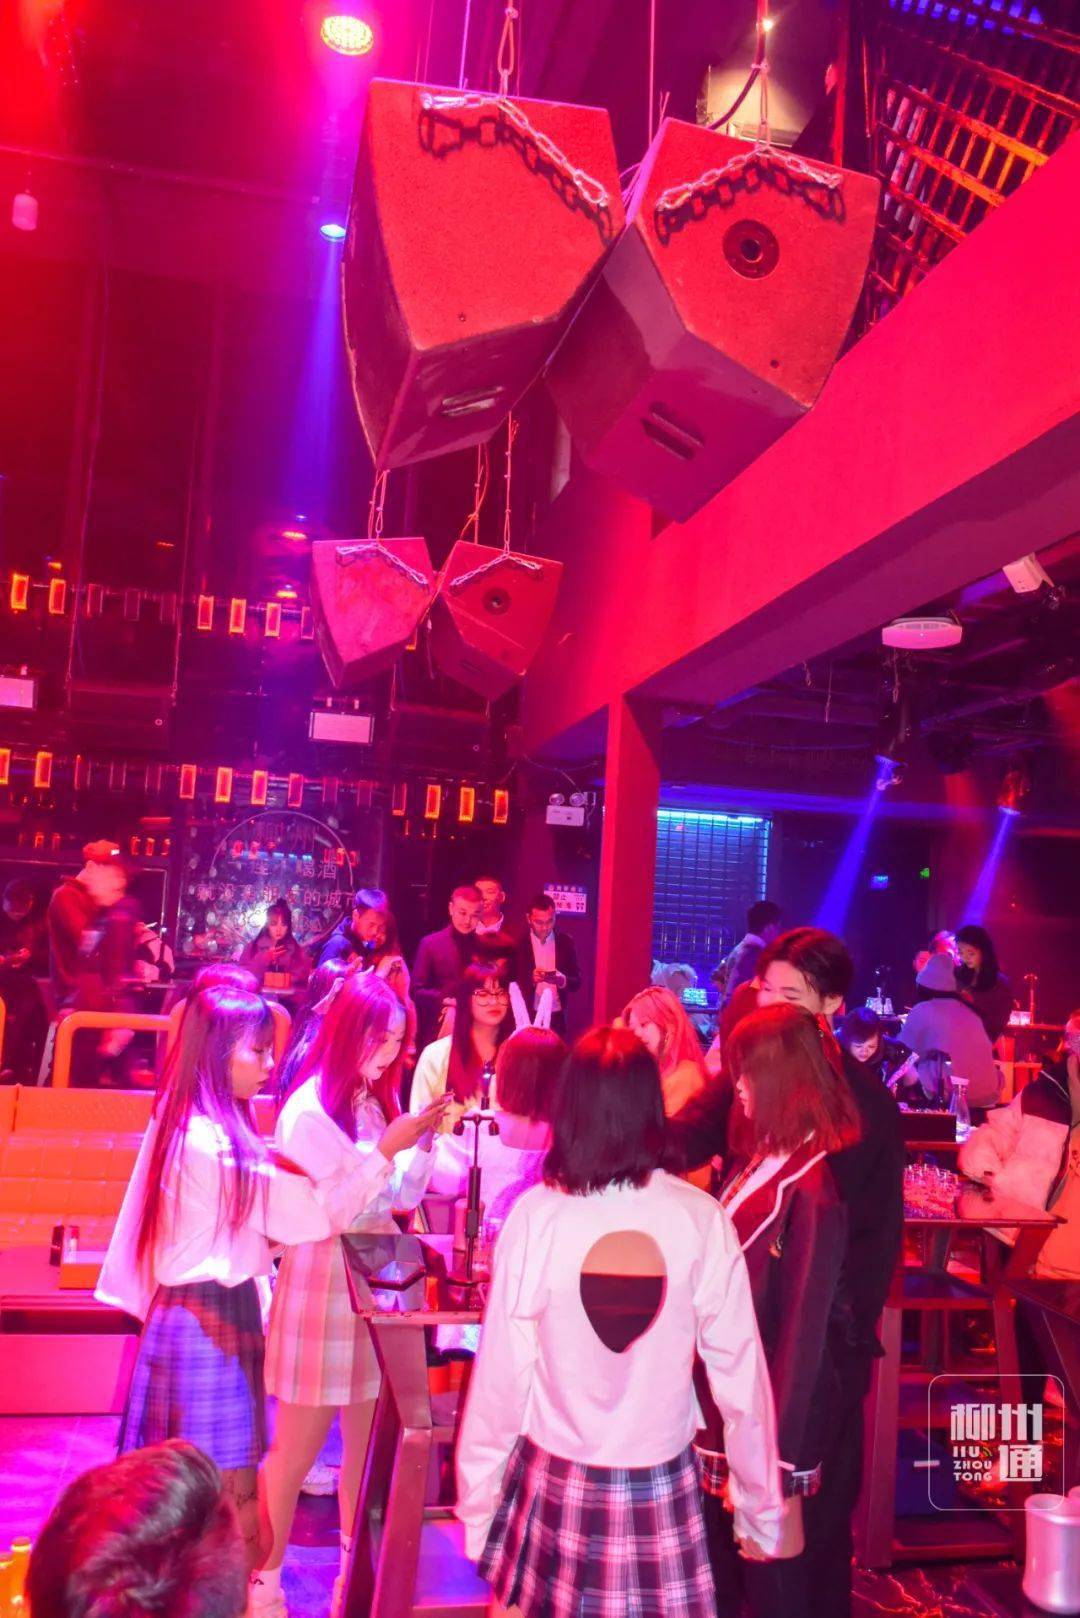 DDR音乐舞蹈游戏在酒吧的文化象征与娱乐魅力  第3张